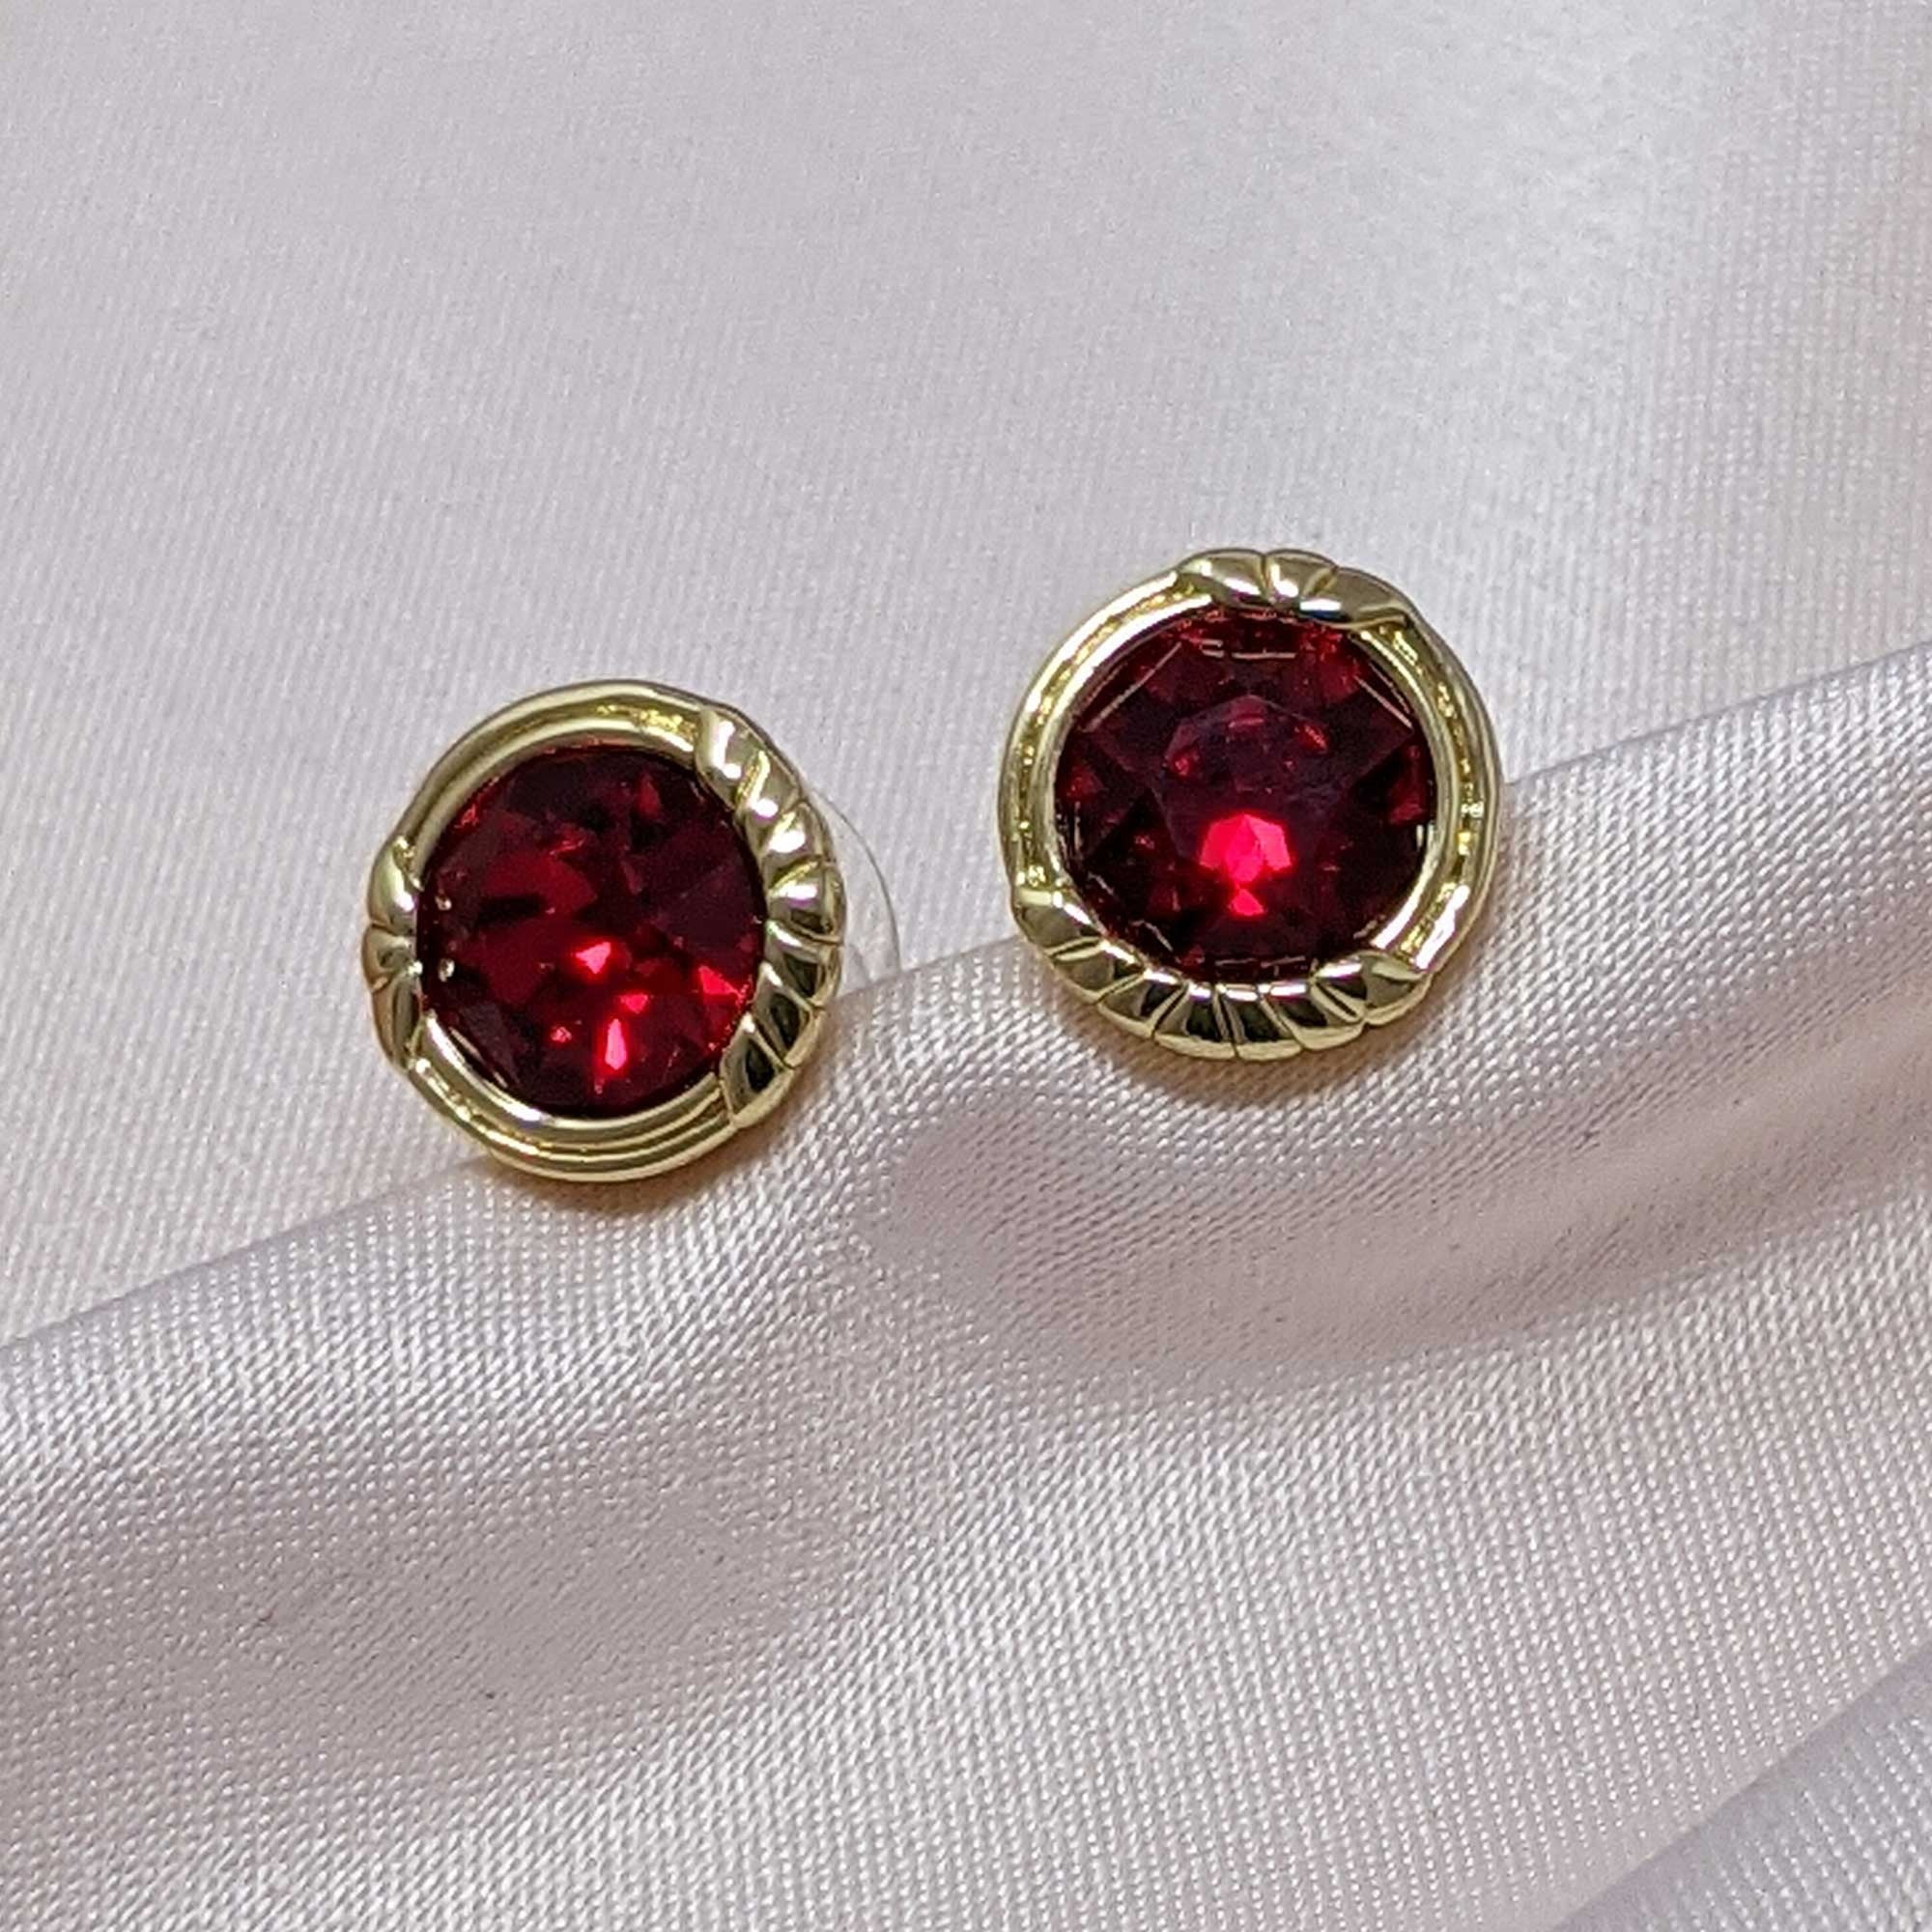 Lovett Heirloom Earrings - Cordelia Swarovski ® Crystal Stud Earrings